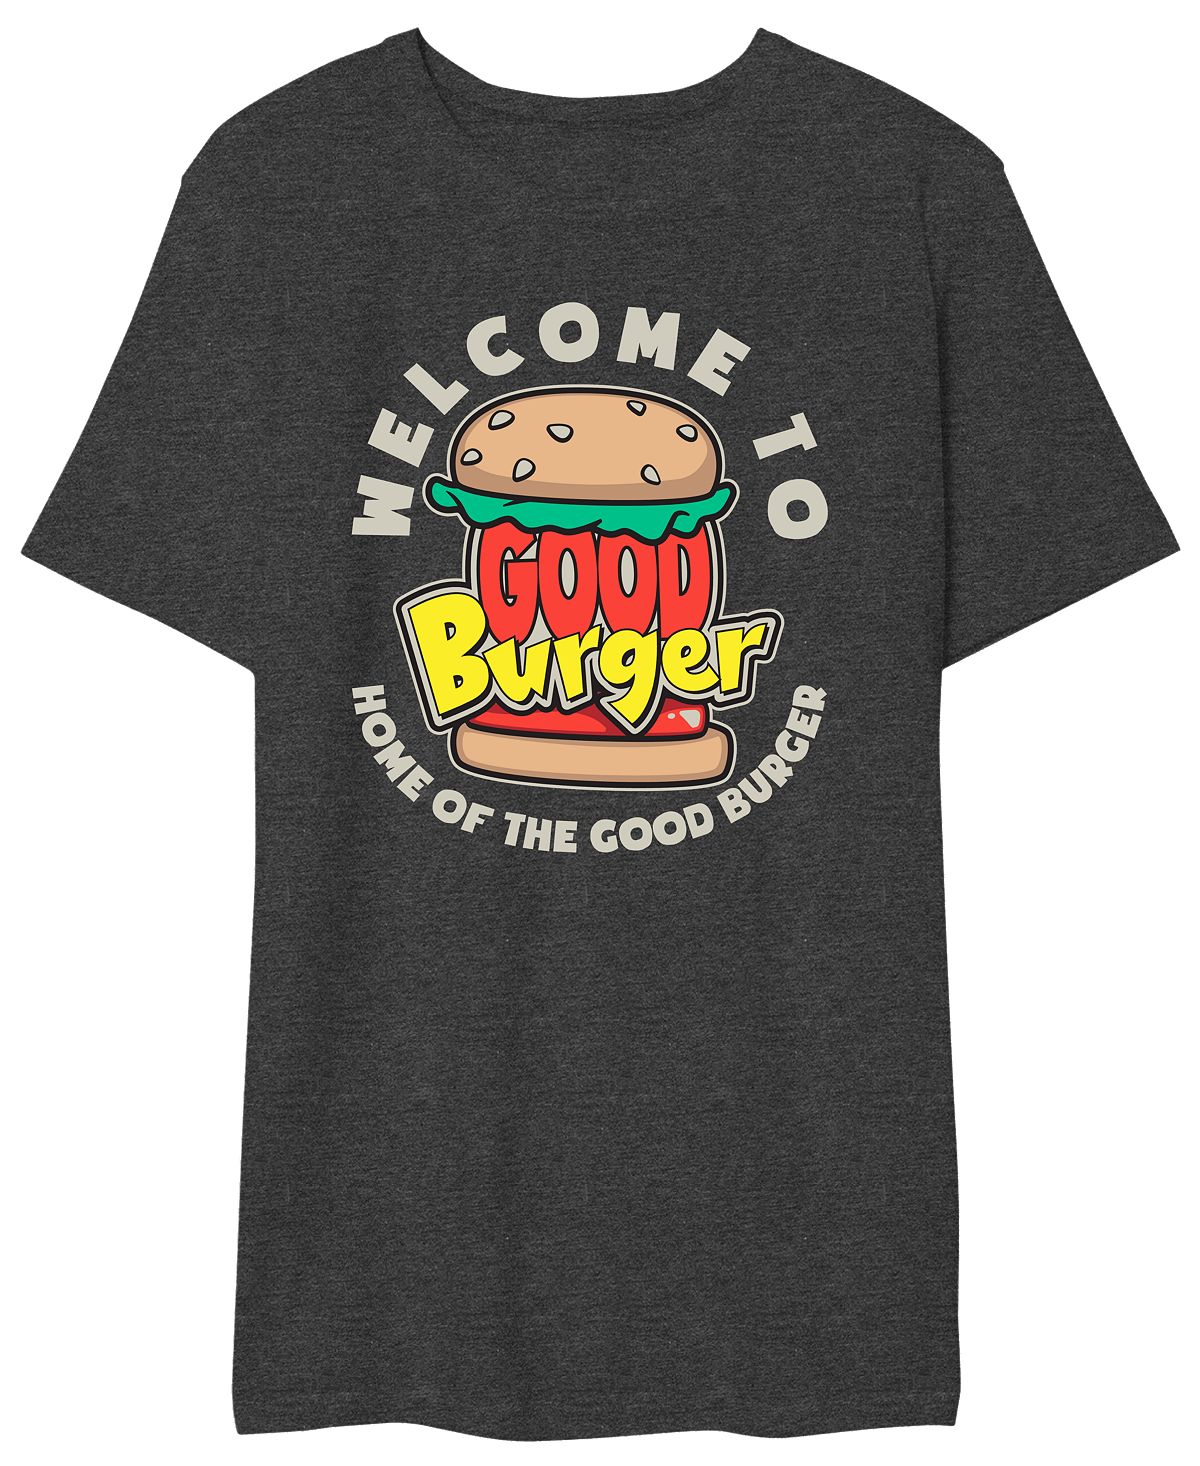 Мужская футболка с надписью good burger добро пожаловать в good burger AIRWAVES, мульти nordic stuffed burger press